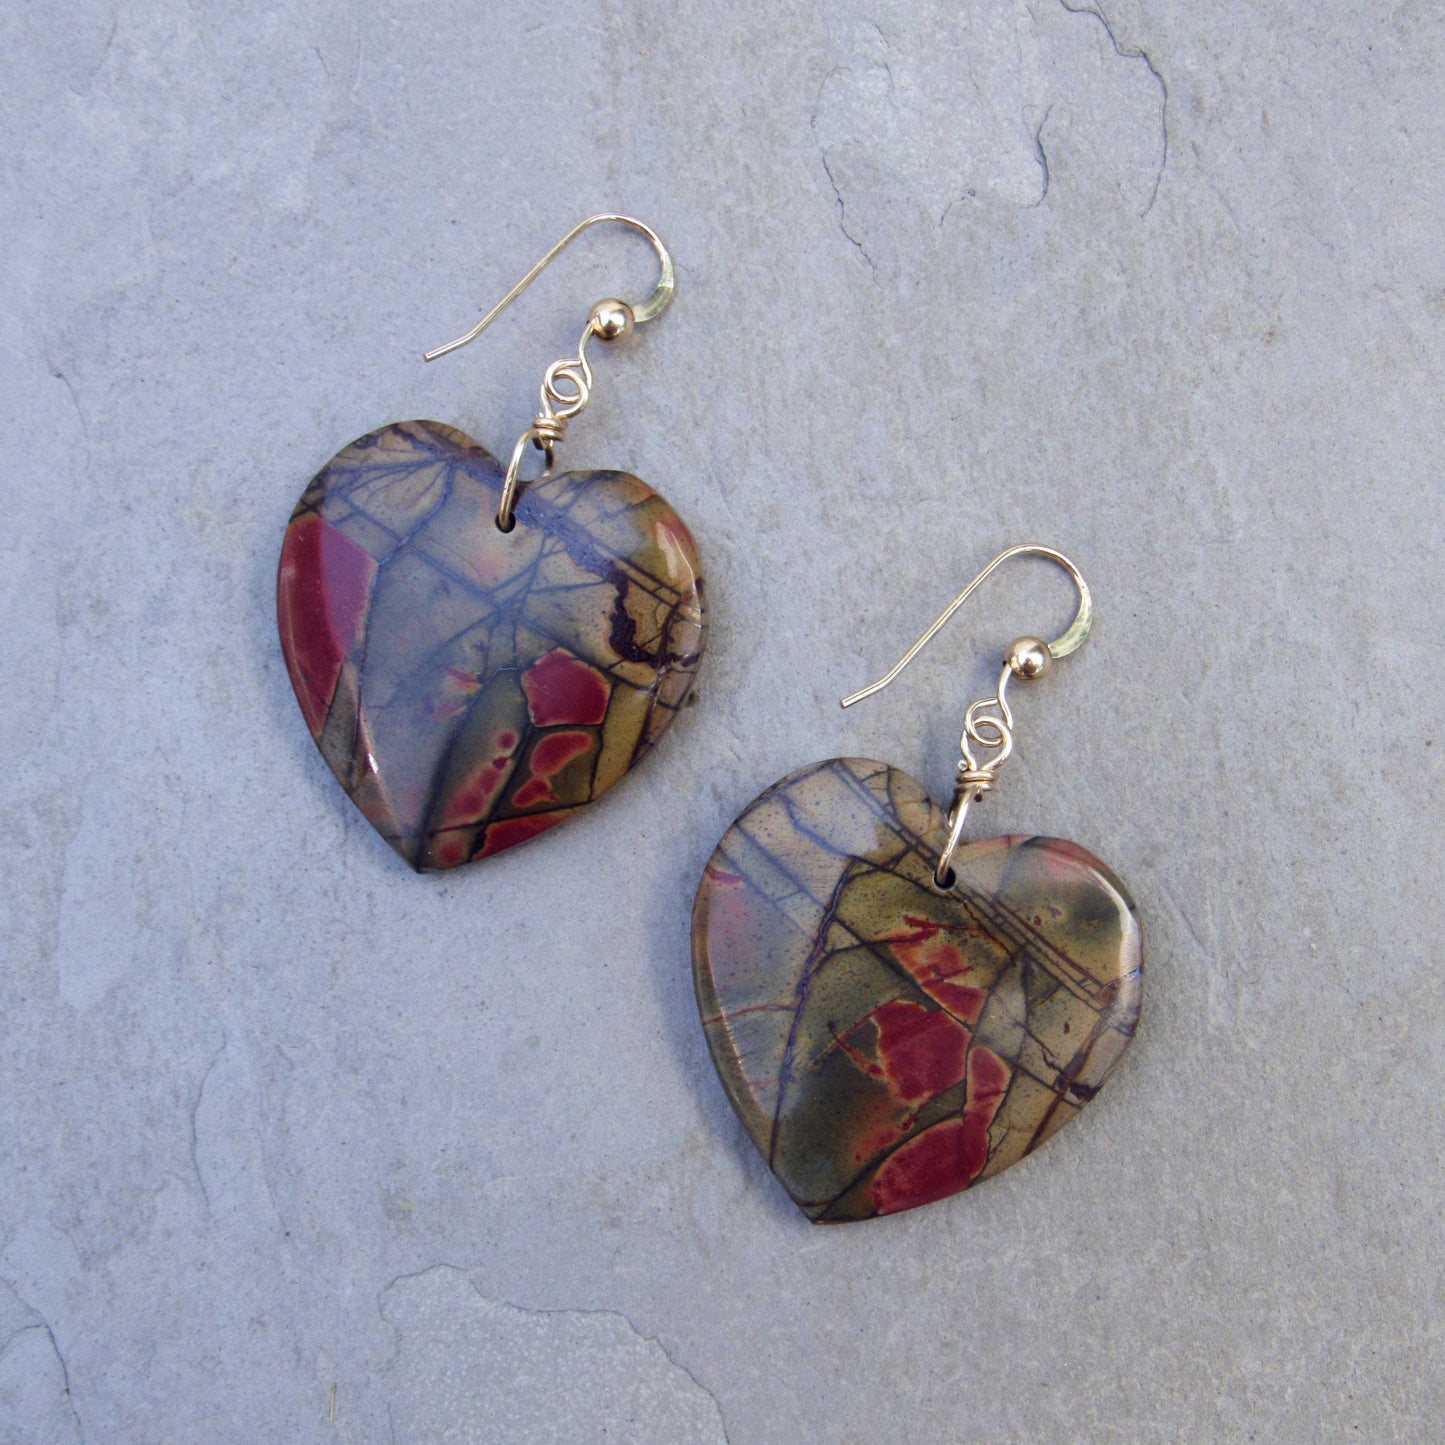 Picasso Jasper gemstone Heart Earrings with 14 Kt GF ear wire